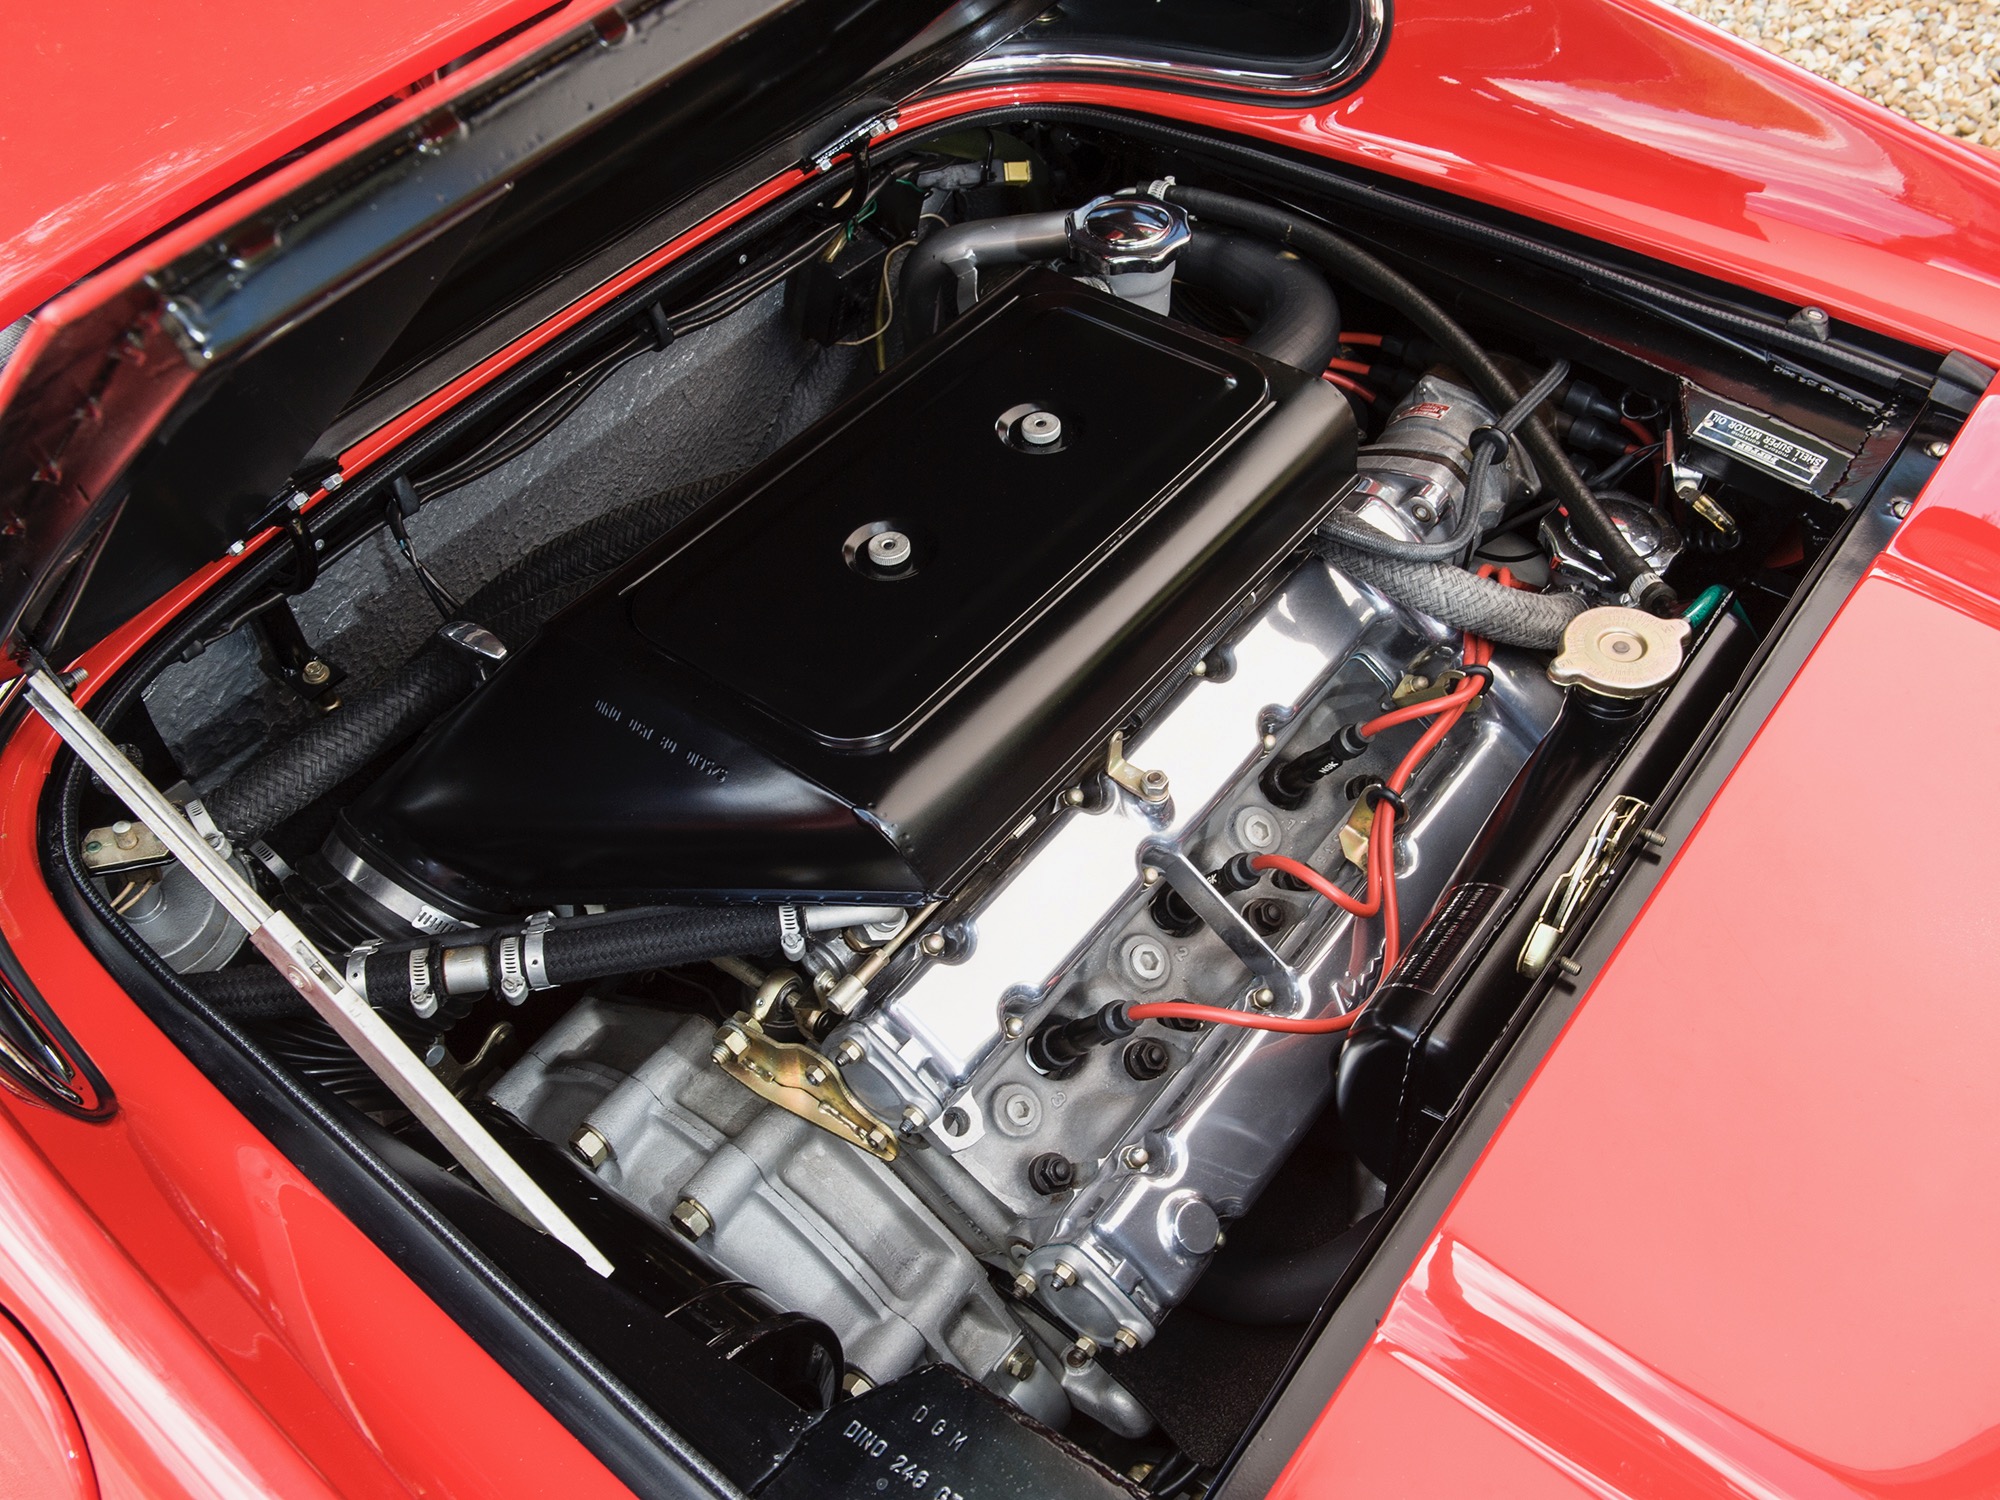 Benzinpumpe HARDI Ferrari Dino 246 GT/GTS, Benzinpumpen & mehr, Vergaser  & Kraftstoffversorgung, Dino 246 GT/GTS, Ferrari, Teile & Zubehör